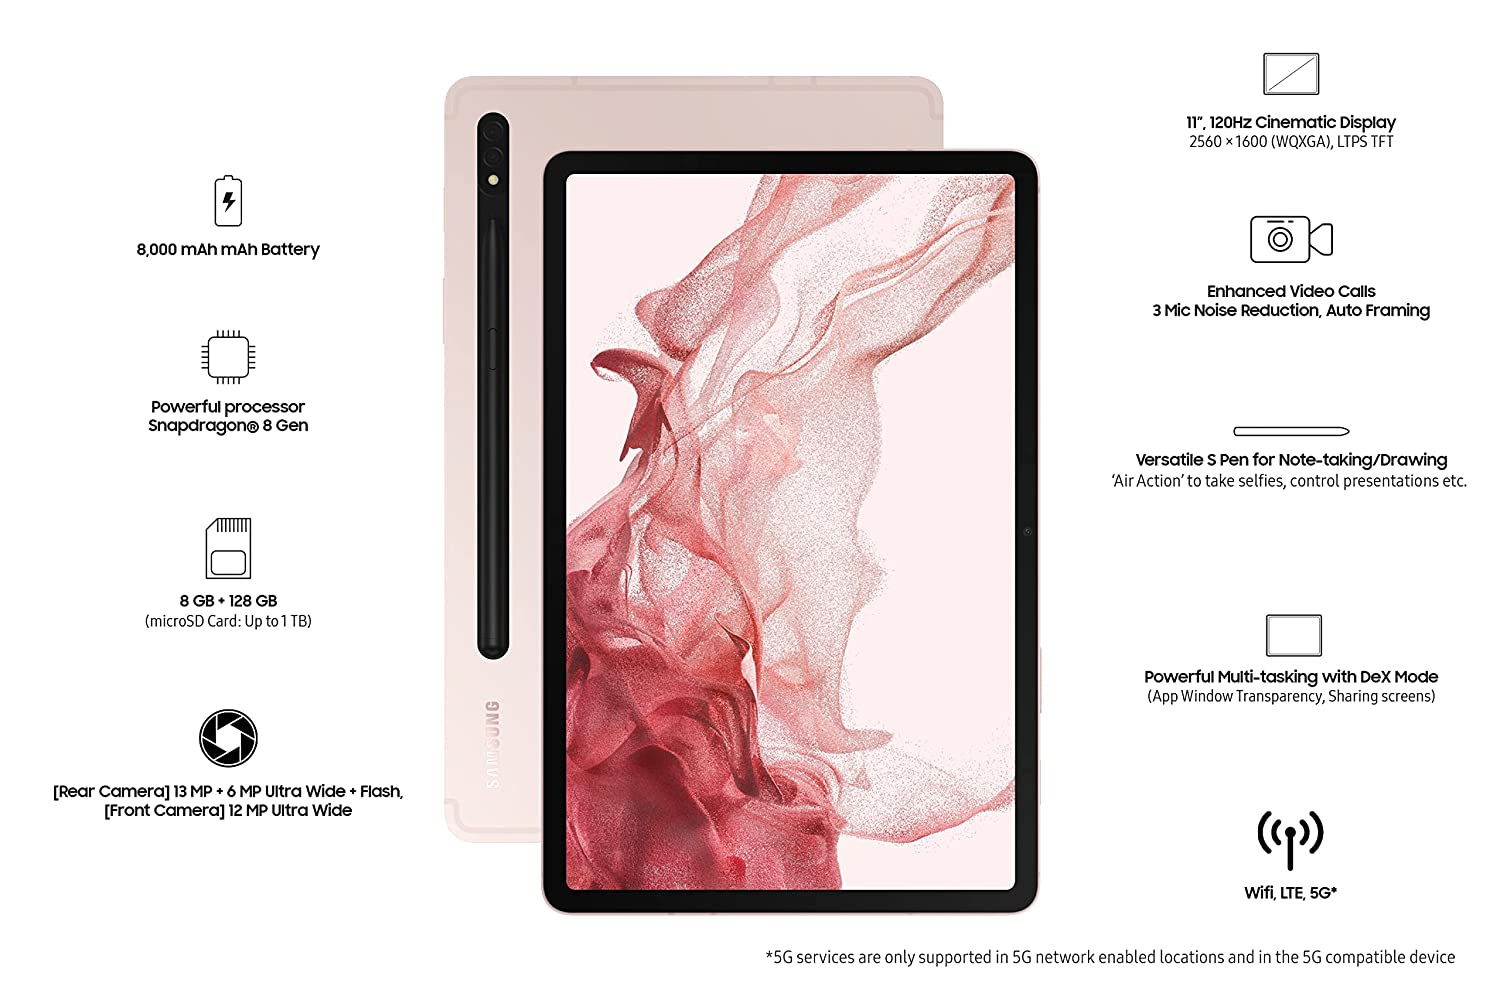 पूरे 10 हजार कम में प्री बुक करें Samsung S8 Tablet, iPad के टक्कर के हैं फीचर्स